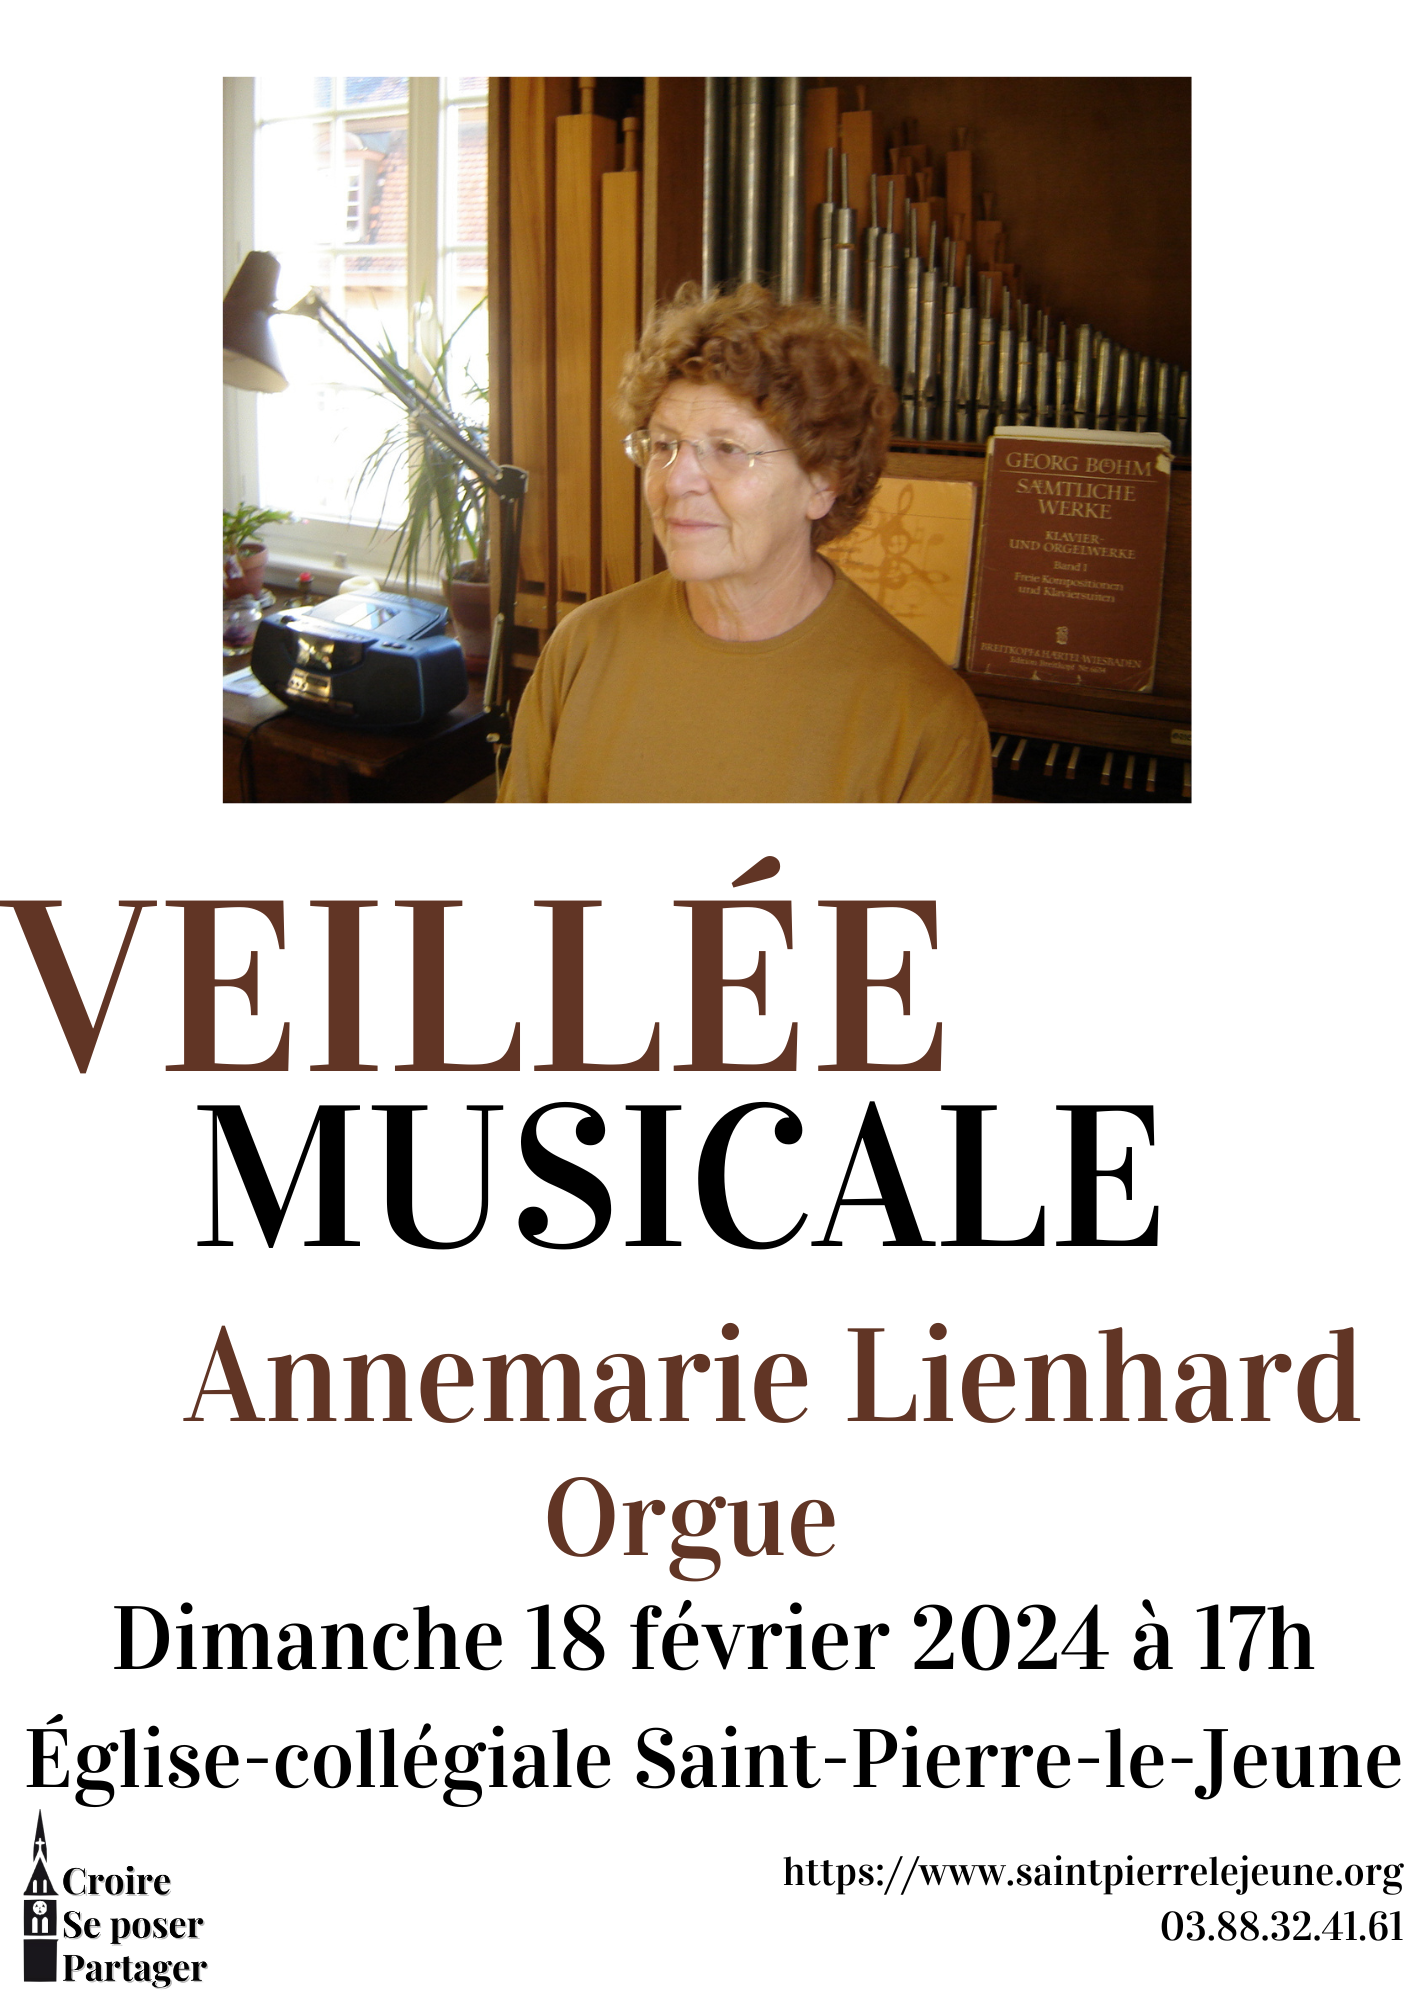 Veillée musicale - Annemarie Lienhard